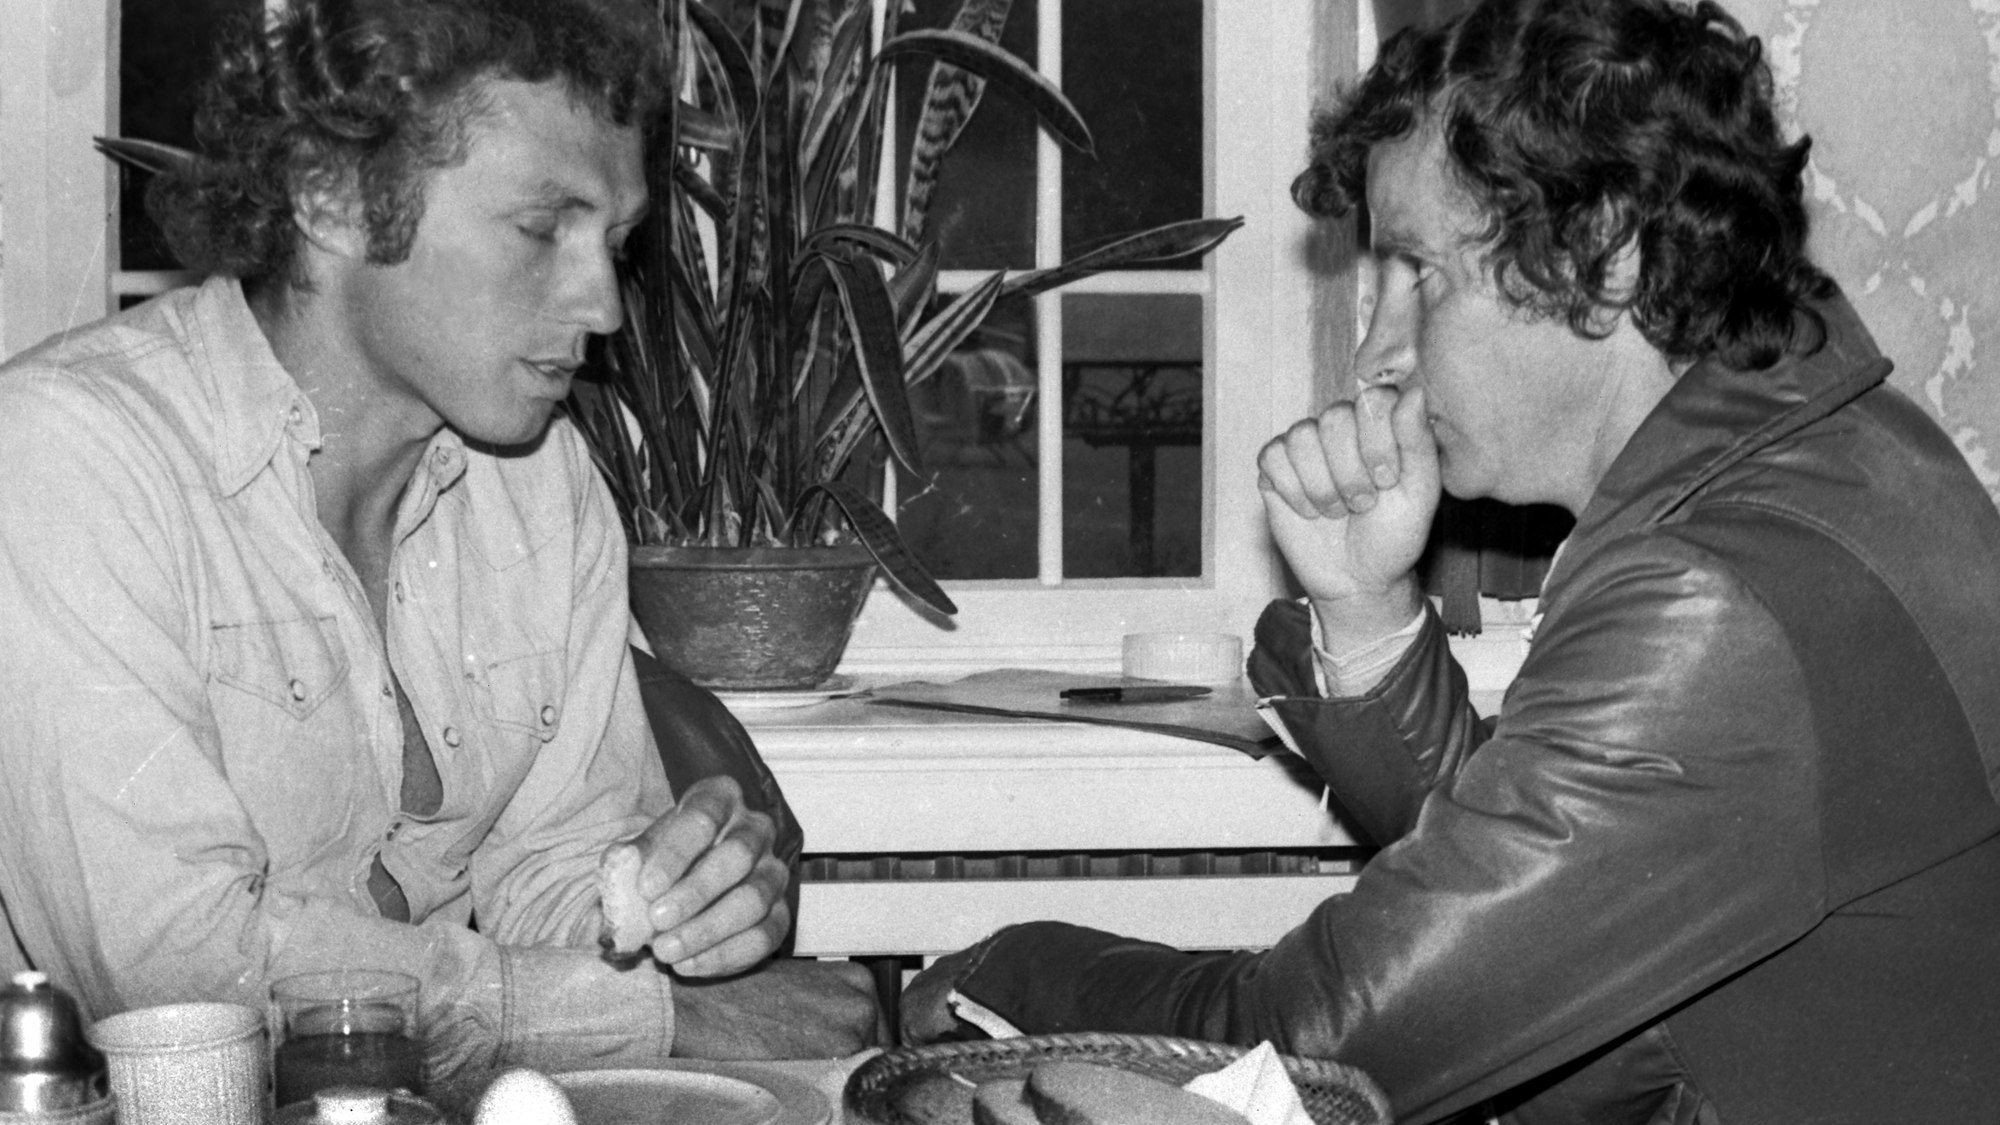 Zwei Männer sitzen sitz gegenüber und scheinen sich zu unterhalten. Im Vordergrund steht ein gedeckter Frühstückstisch mit gekochtem Ei und Brot. Das Foto ist in schwarz-weiß.